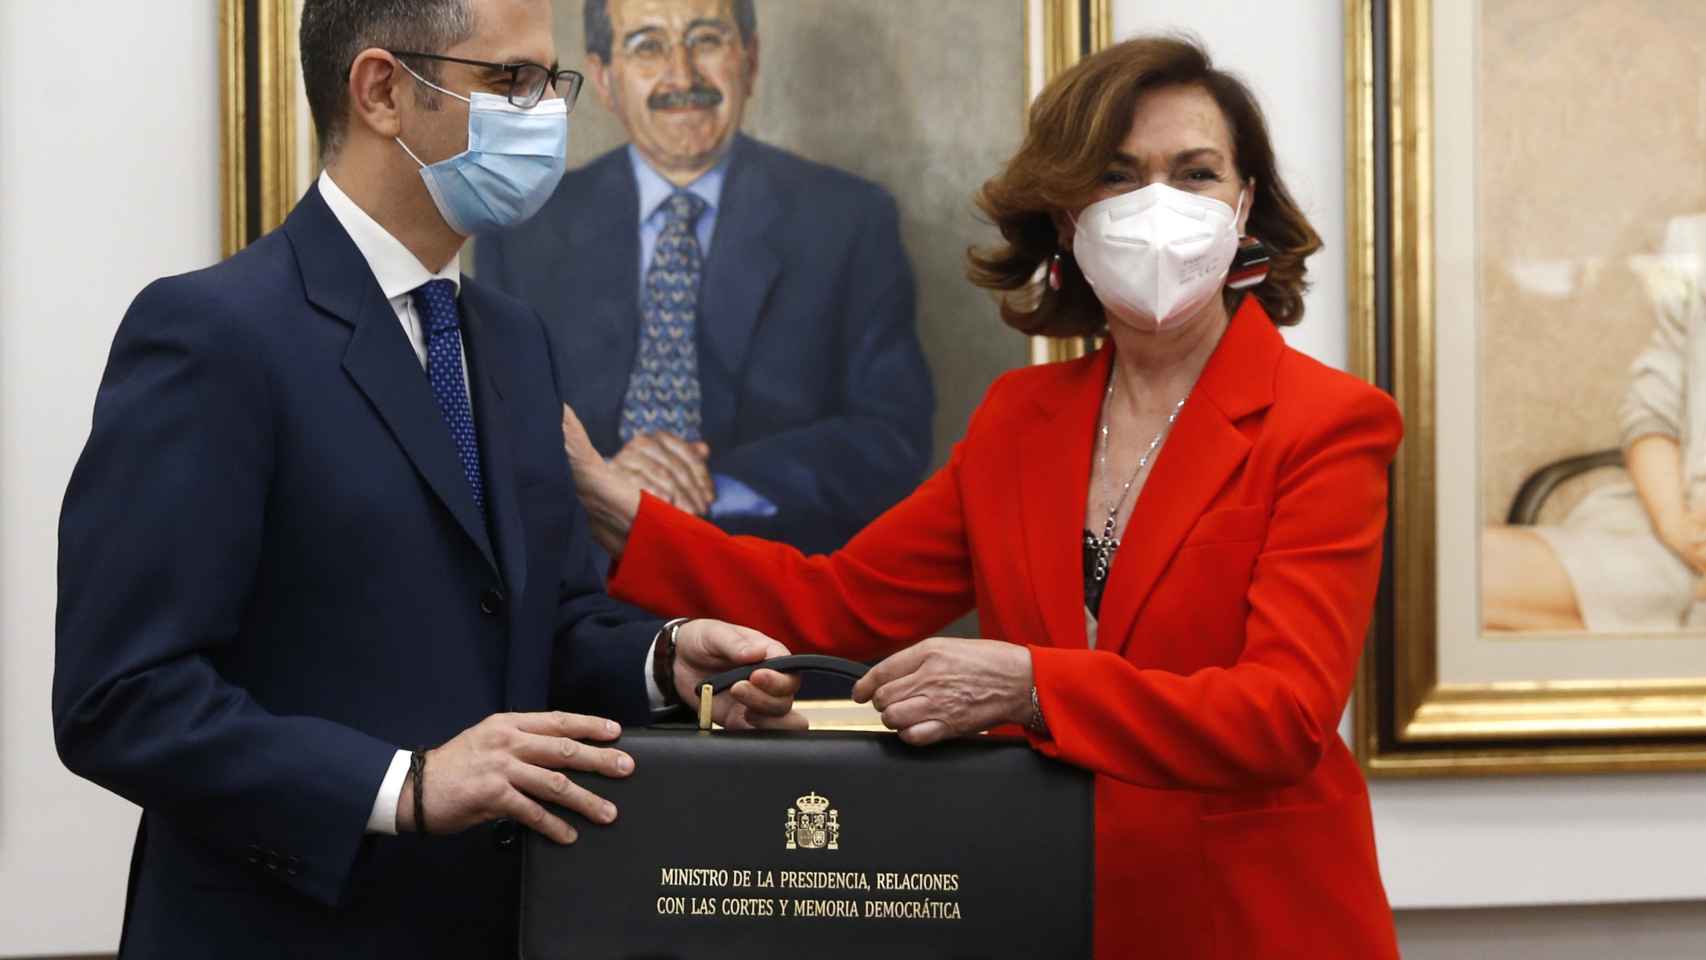 Carmen Calvo, exvicepresidenta primera del Gobierno, entrega su cartera al ministro de la Presidencia, Félix Bolaños.